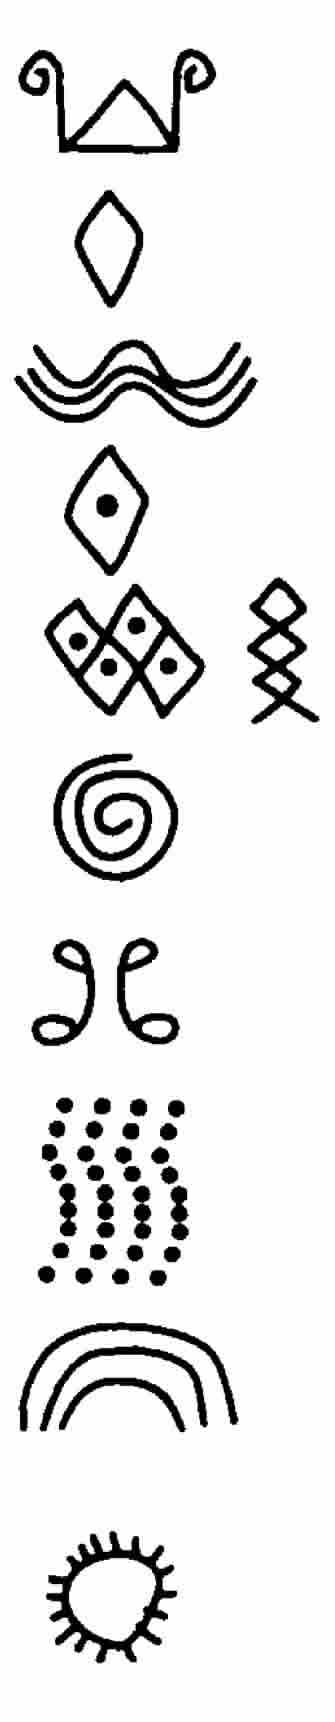 ARTE RUPESTRE introducción petroglifos pinturas rupestres